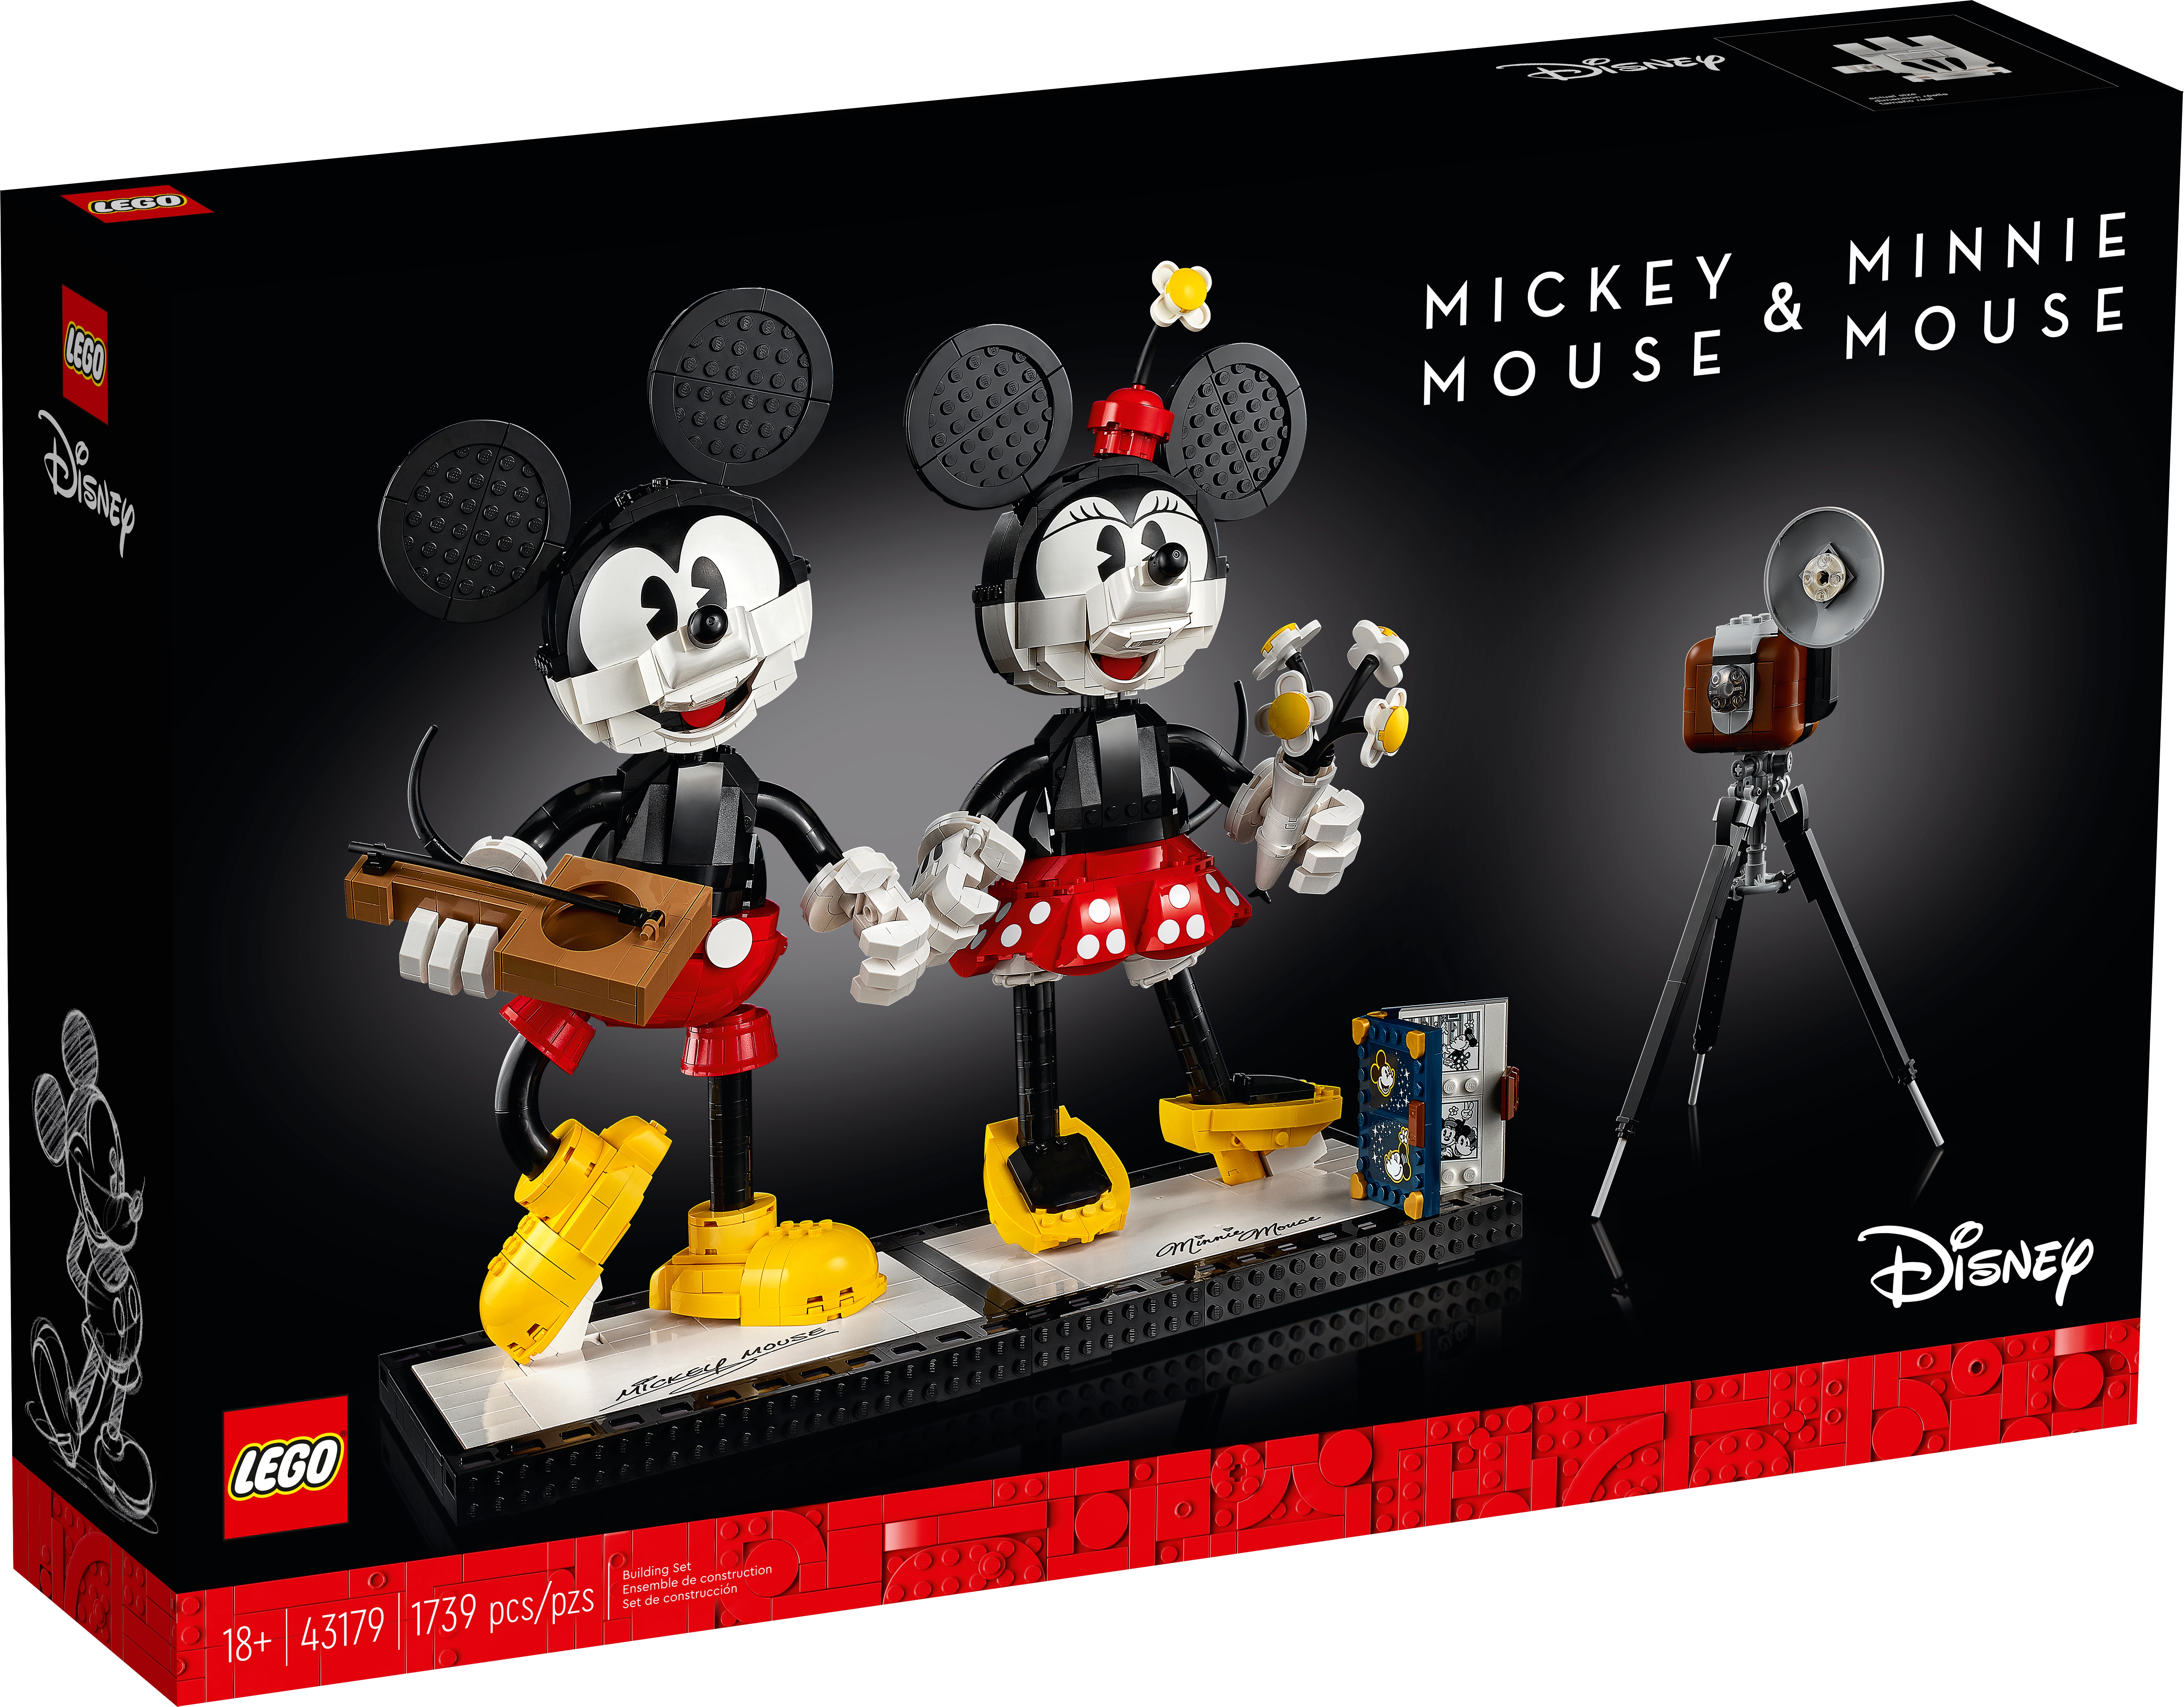 ミッキーマウス&ミニーマウス 43179 | ディズニー™ |レゴ®ストア公式 